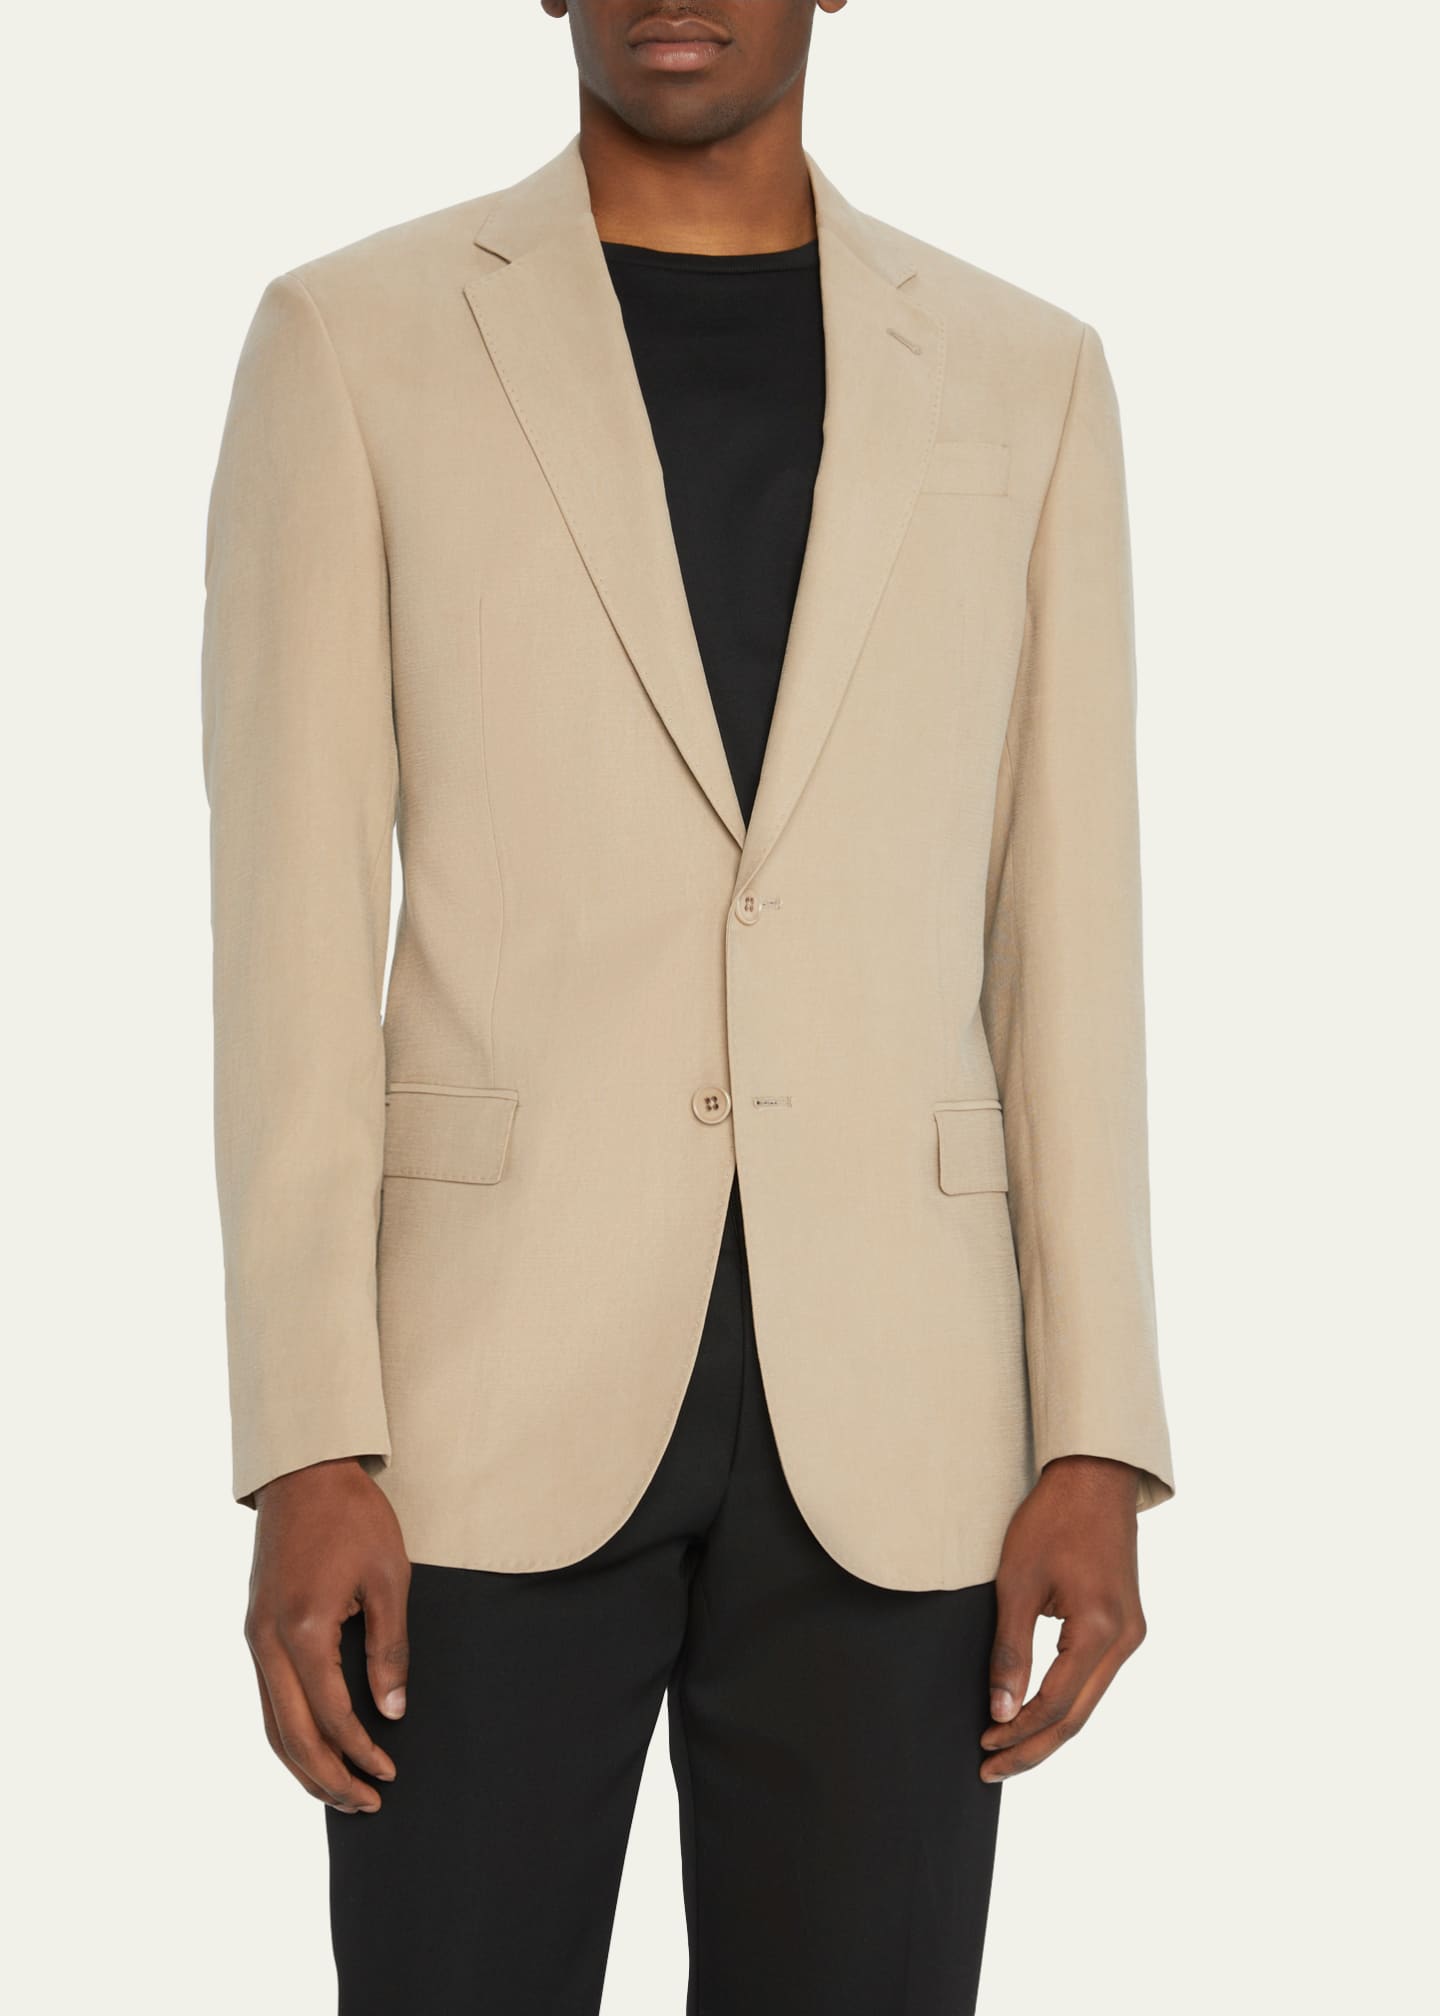 Emporio Armani Men's Solid Suit Separate Sport Coat - Bergdorf Goodman